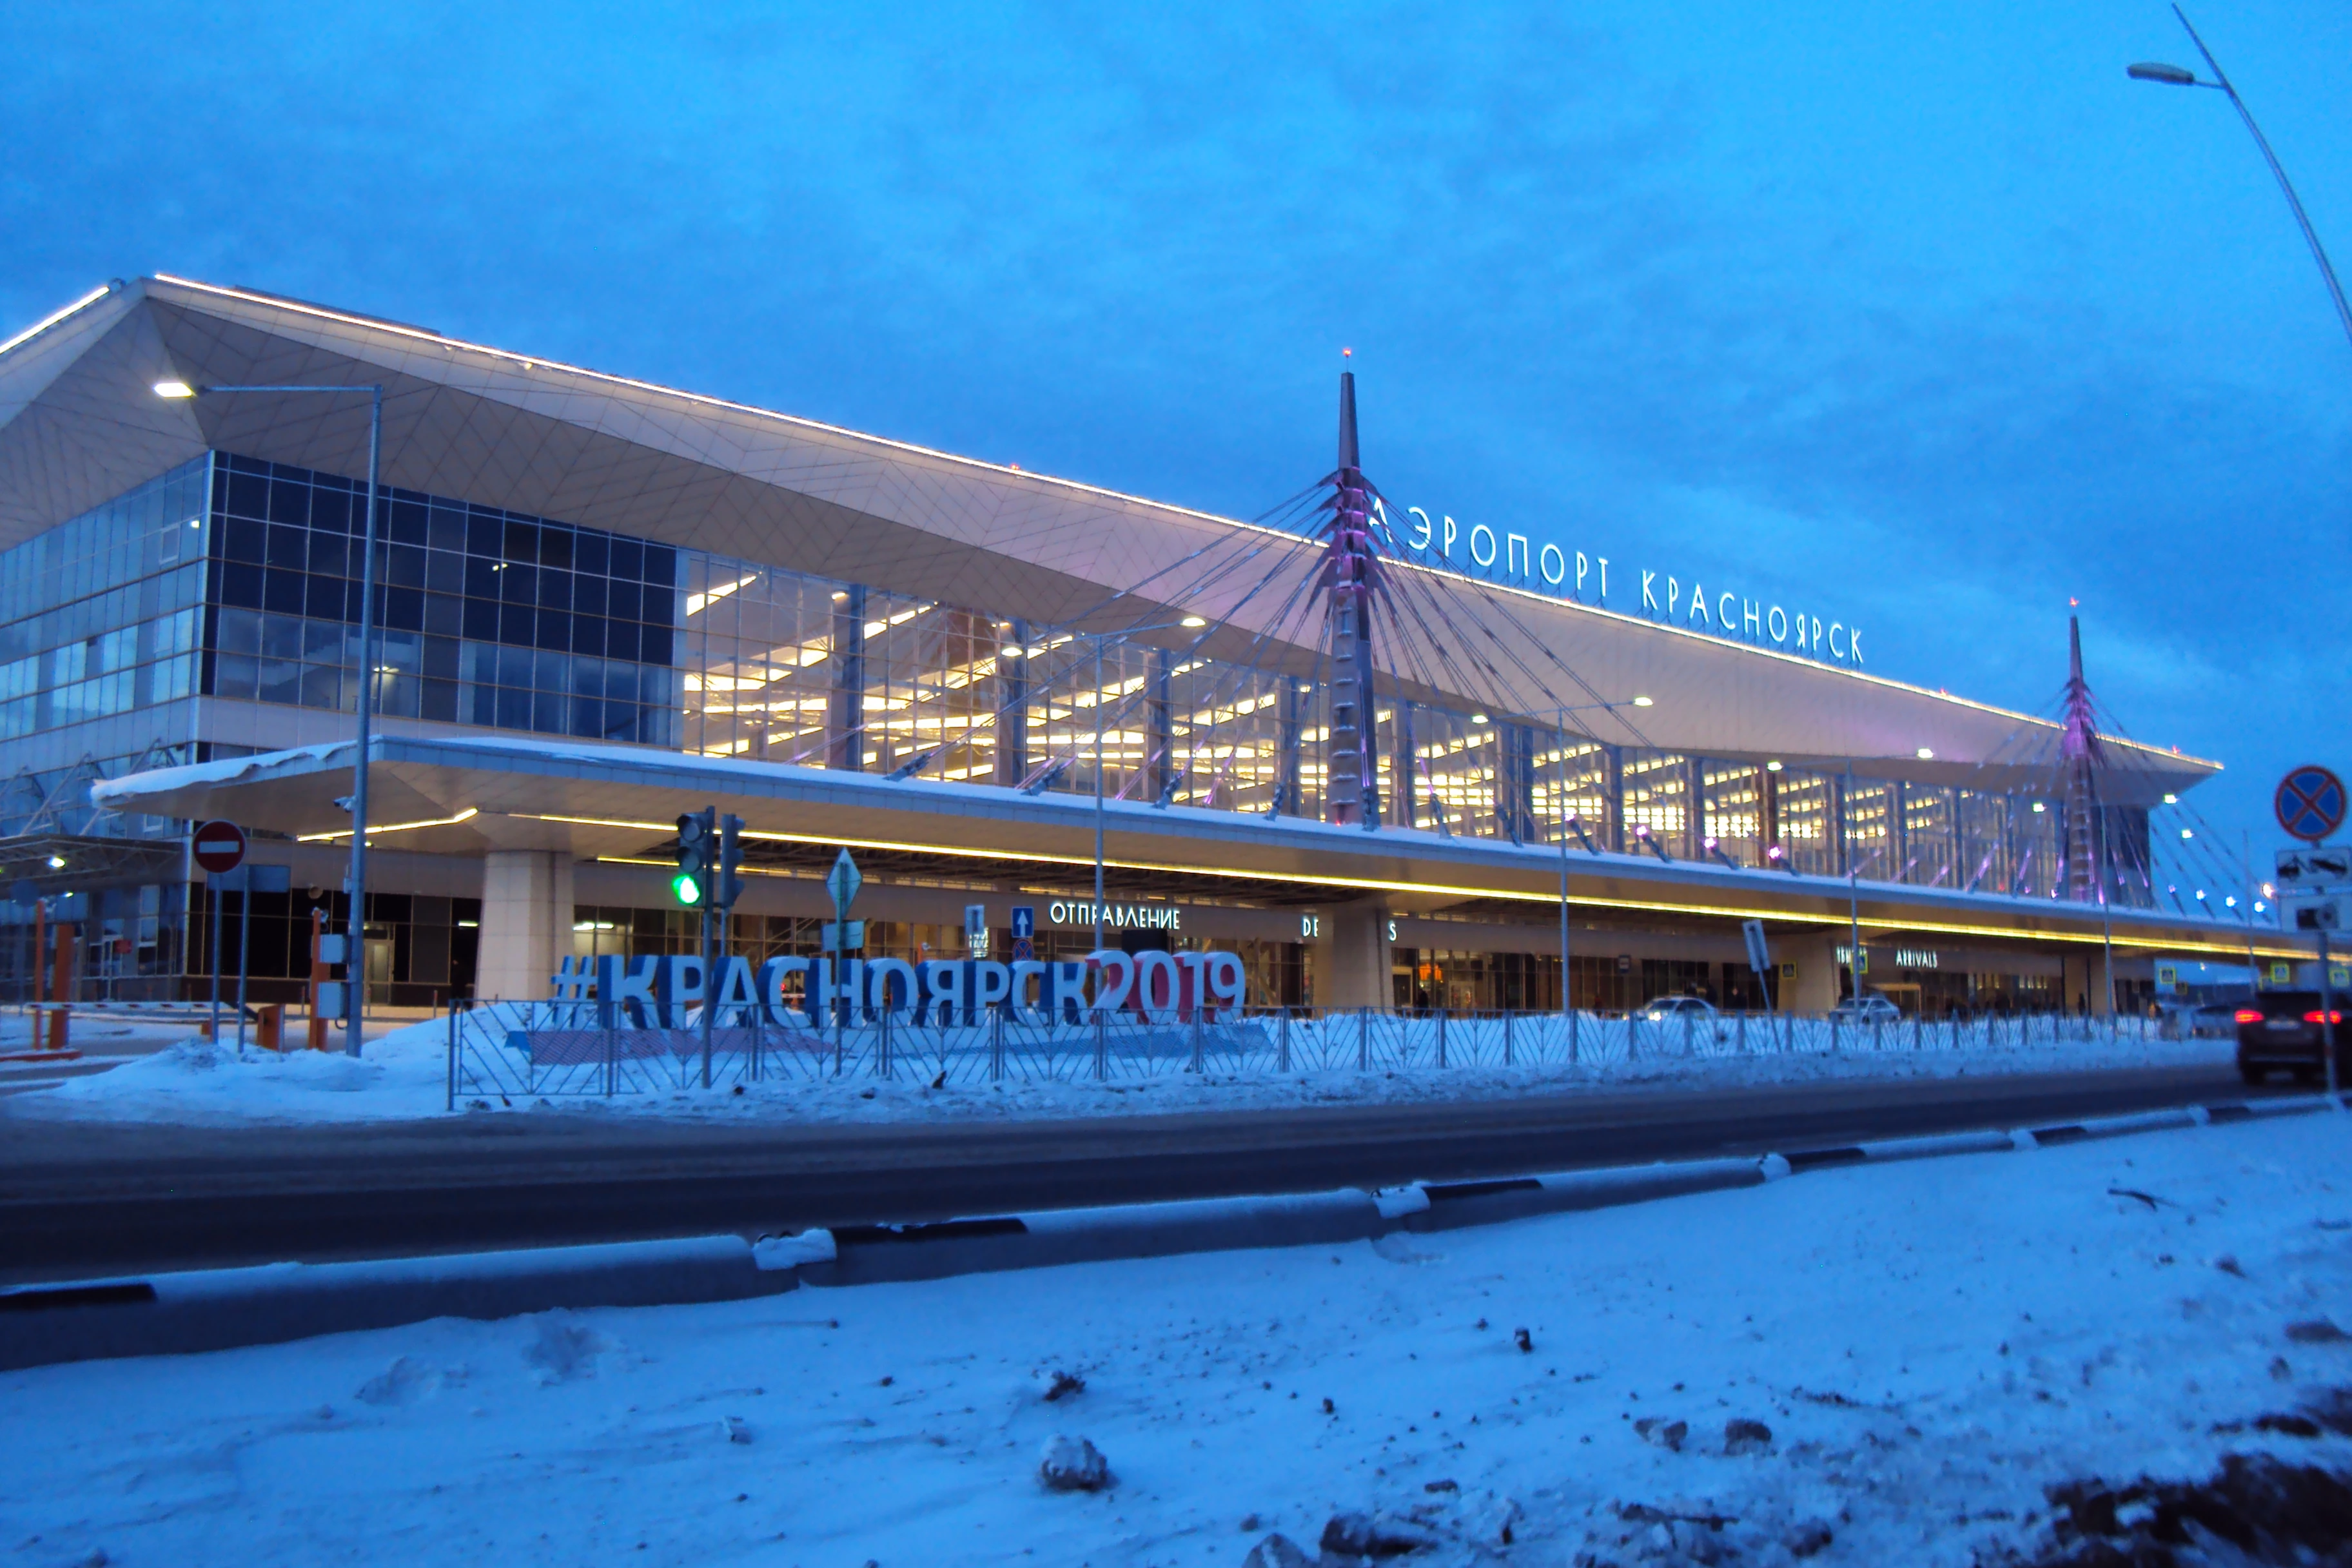 Емельяновский аэропорт Красноярск